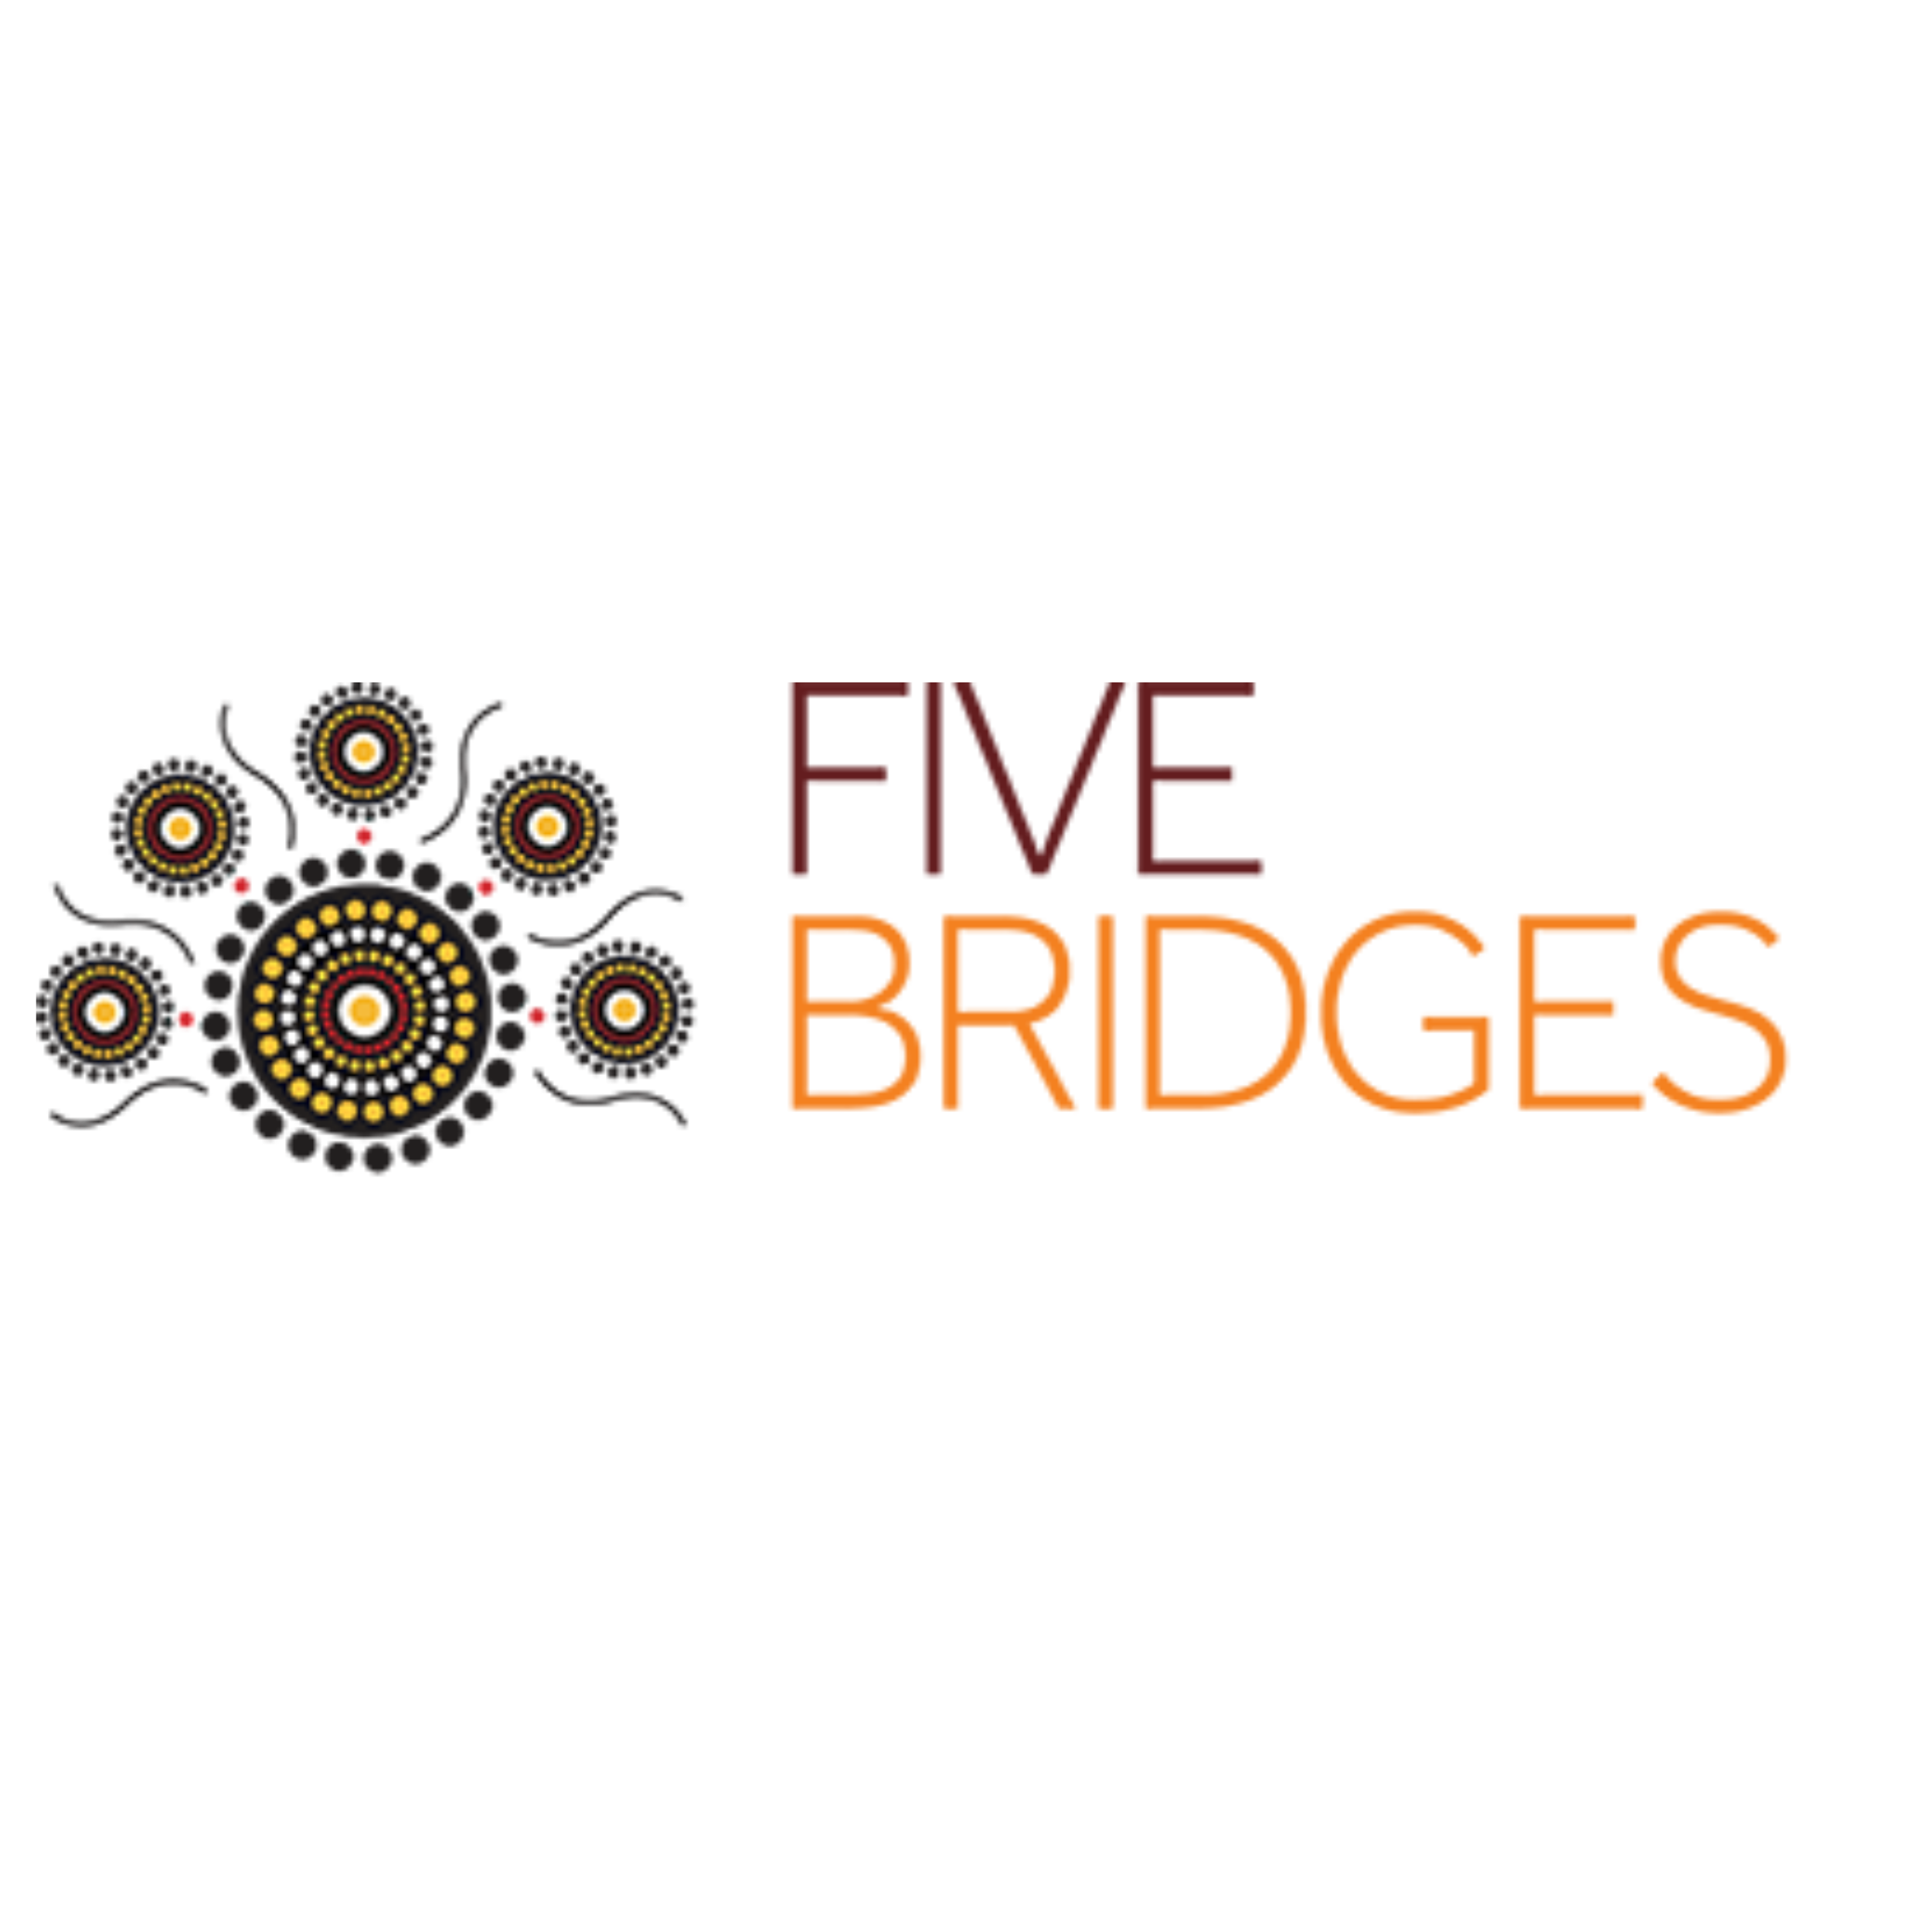 Five Bridges : Brand Short Description Type Here.